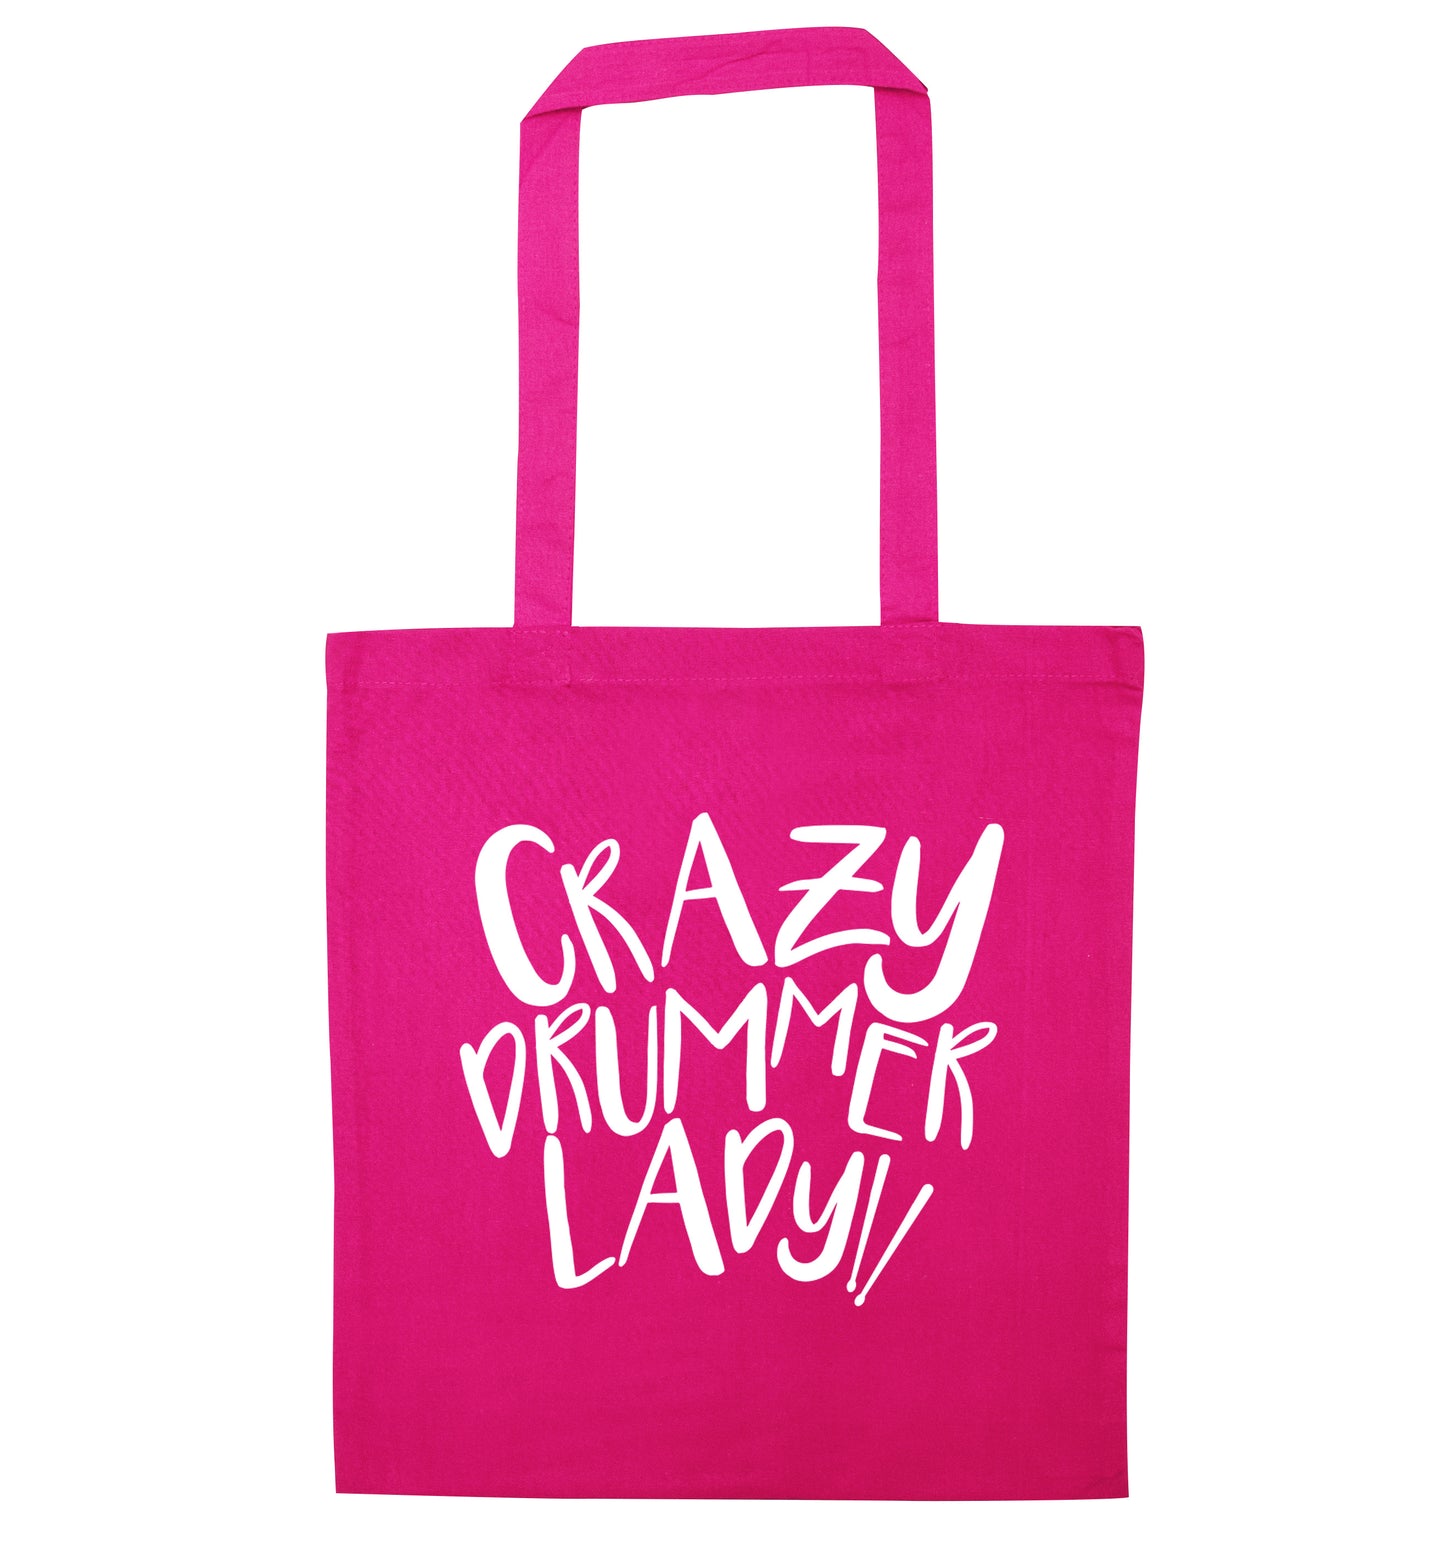 Crazy drummer lady pink tote bag